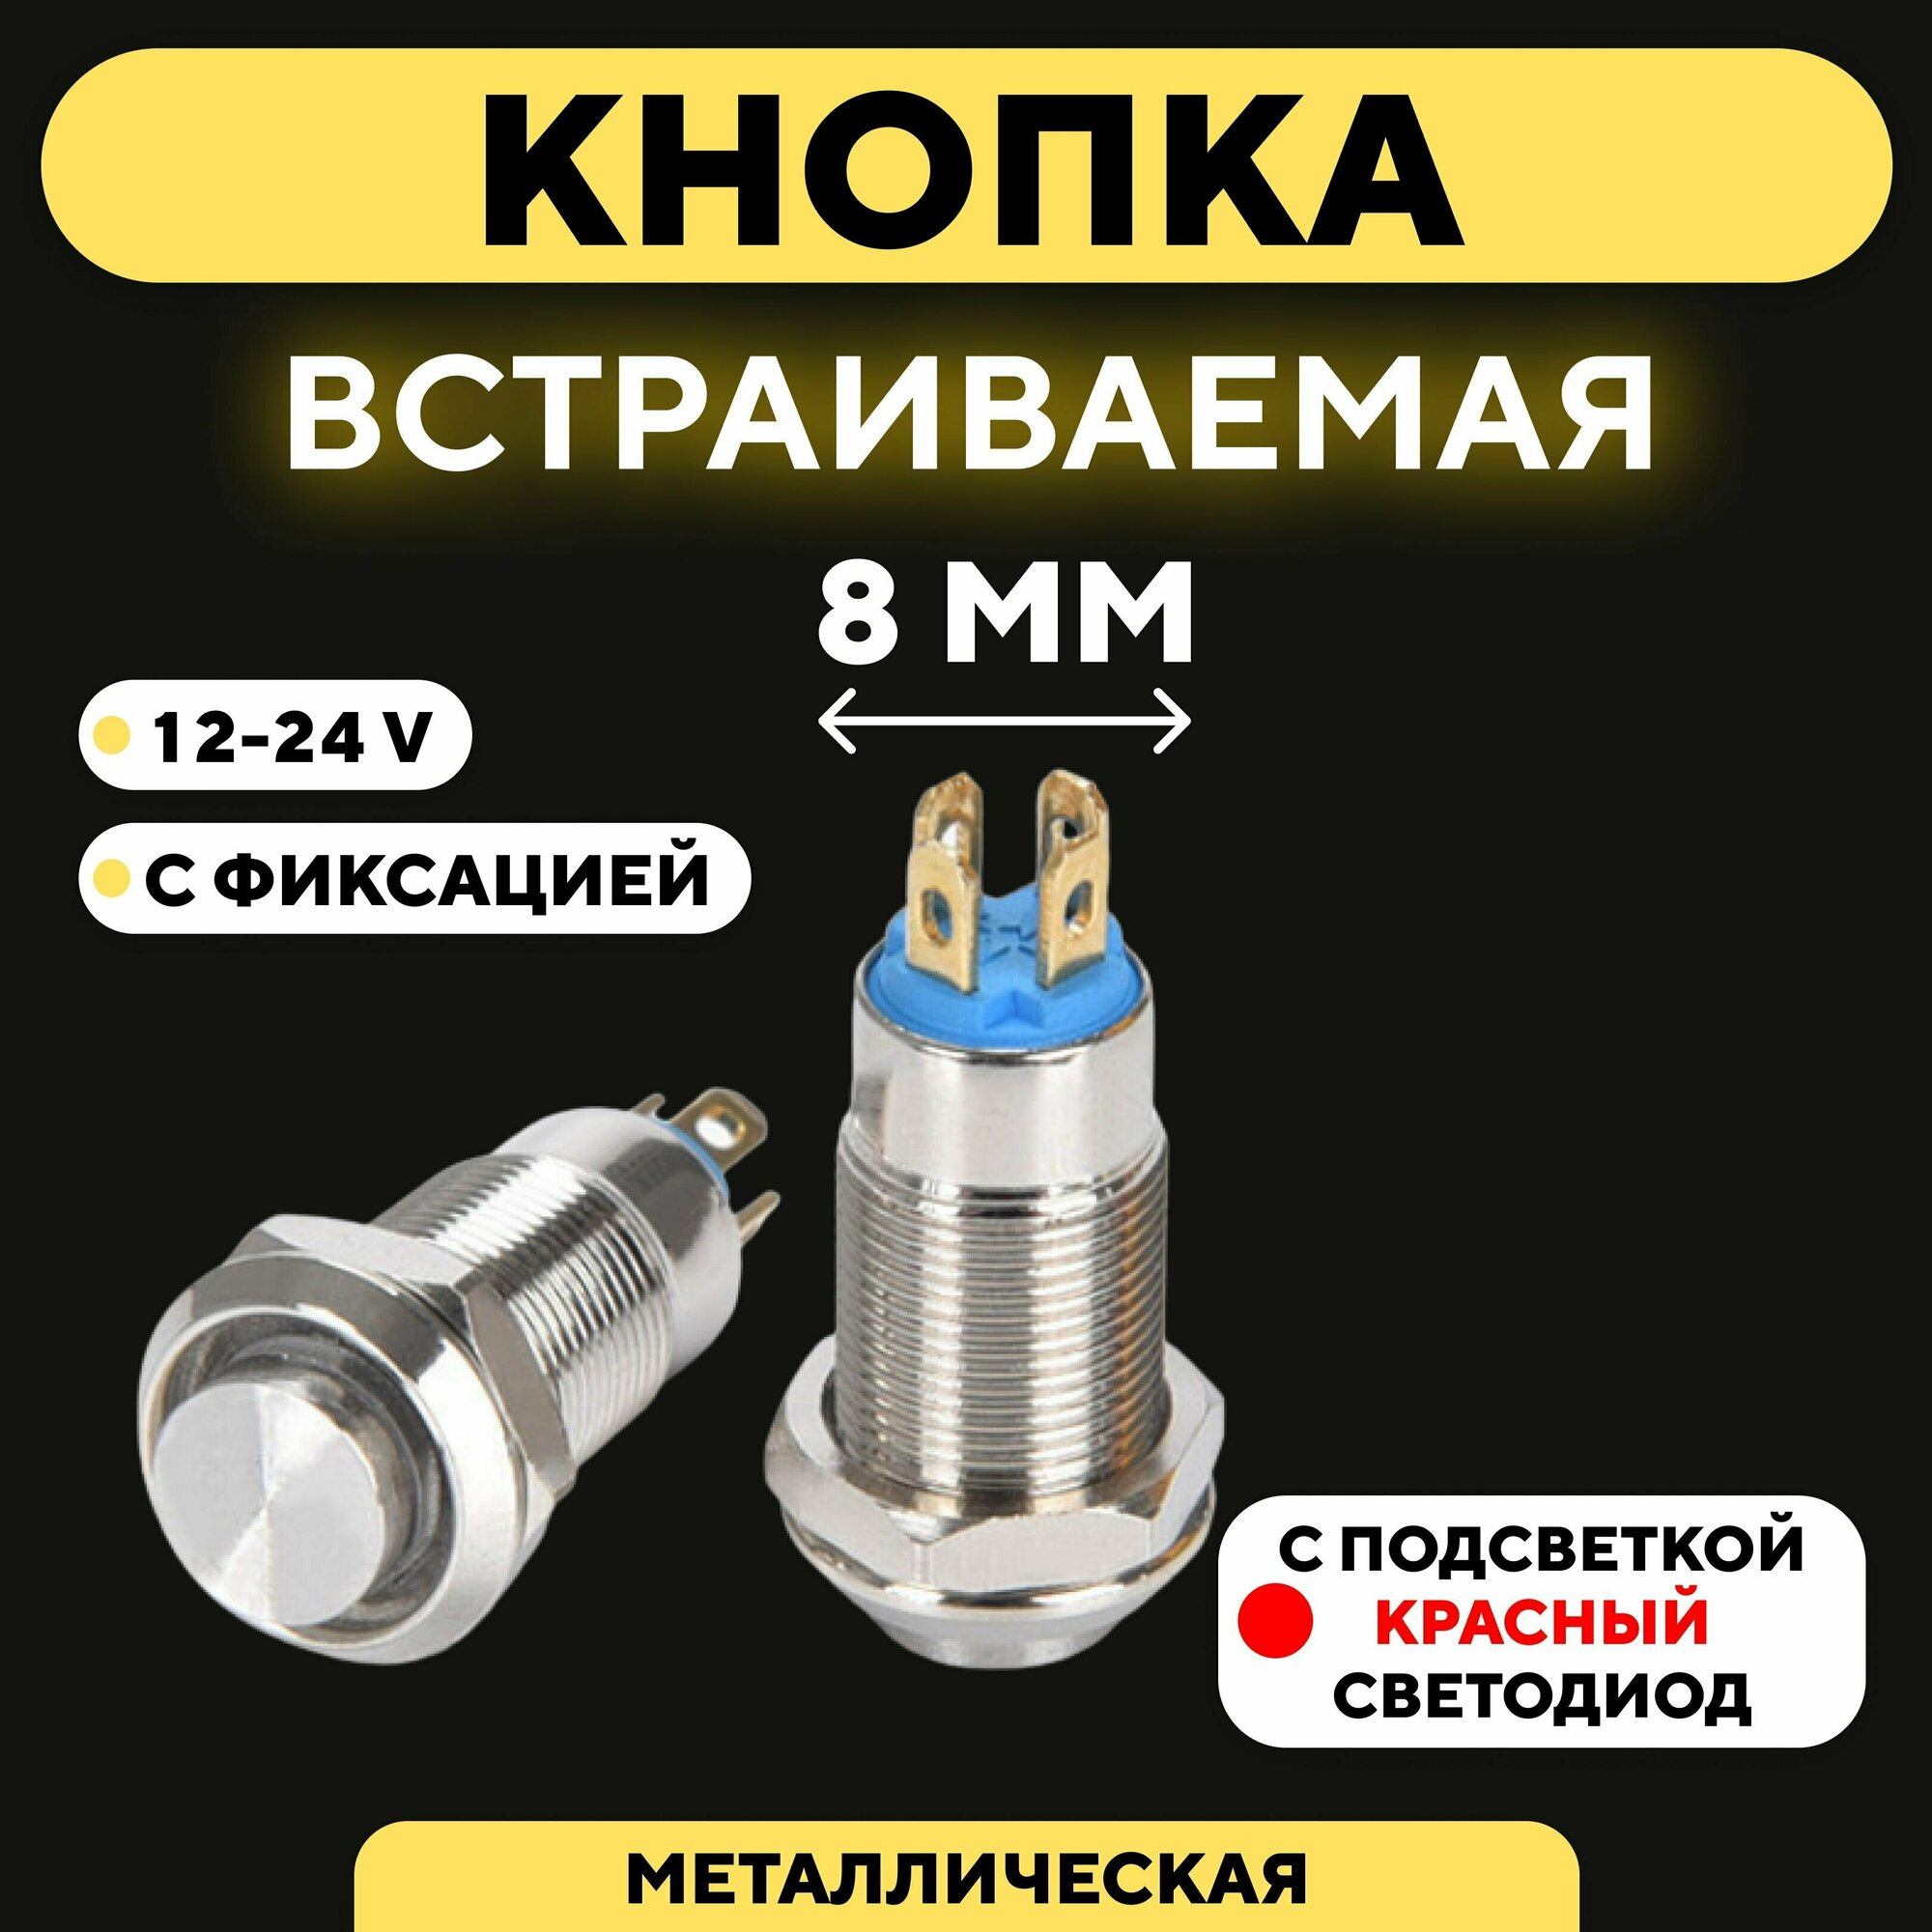 Кнопка встраиваемая металлическая с индикатором (12-24 В 8 мм) / С фиксацией / Красный